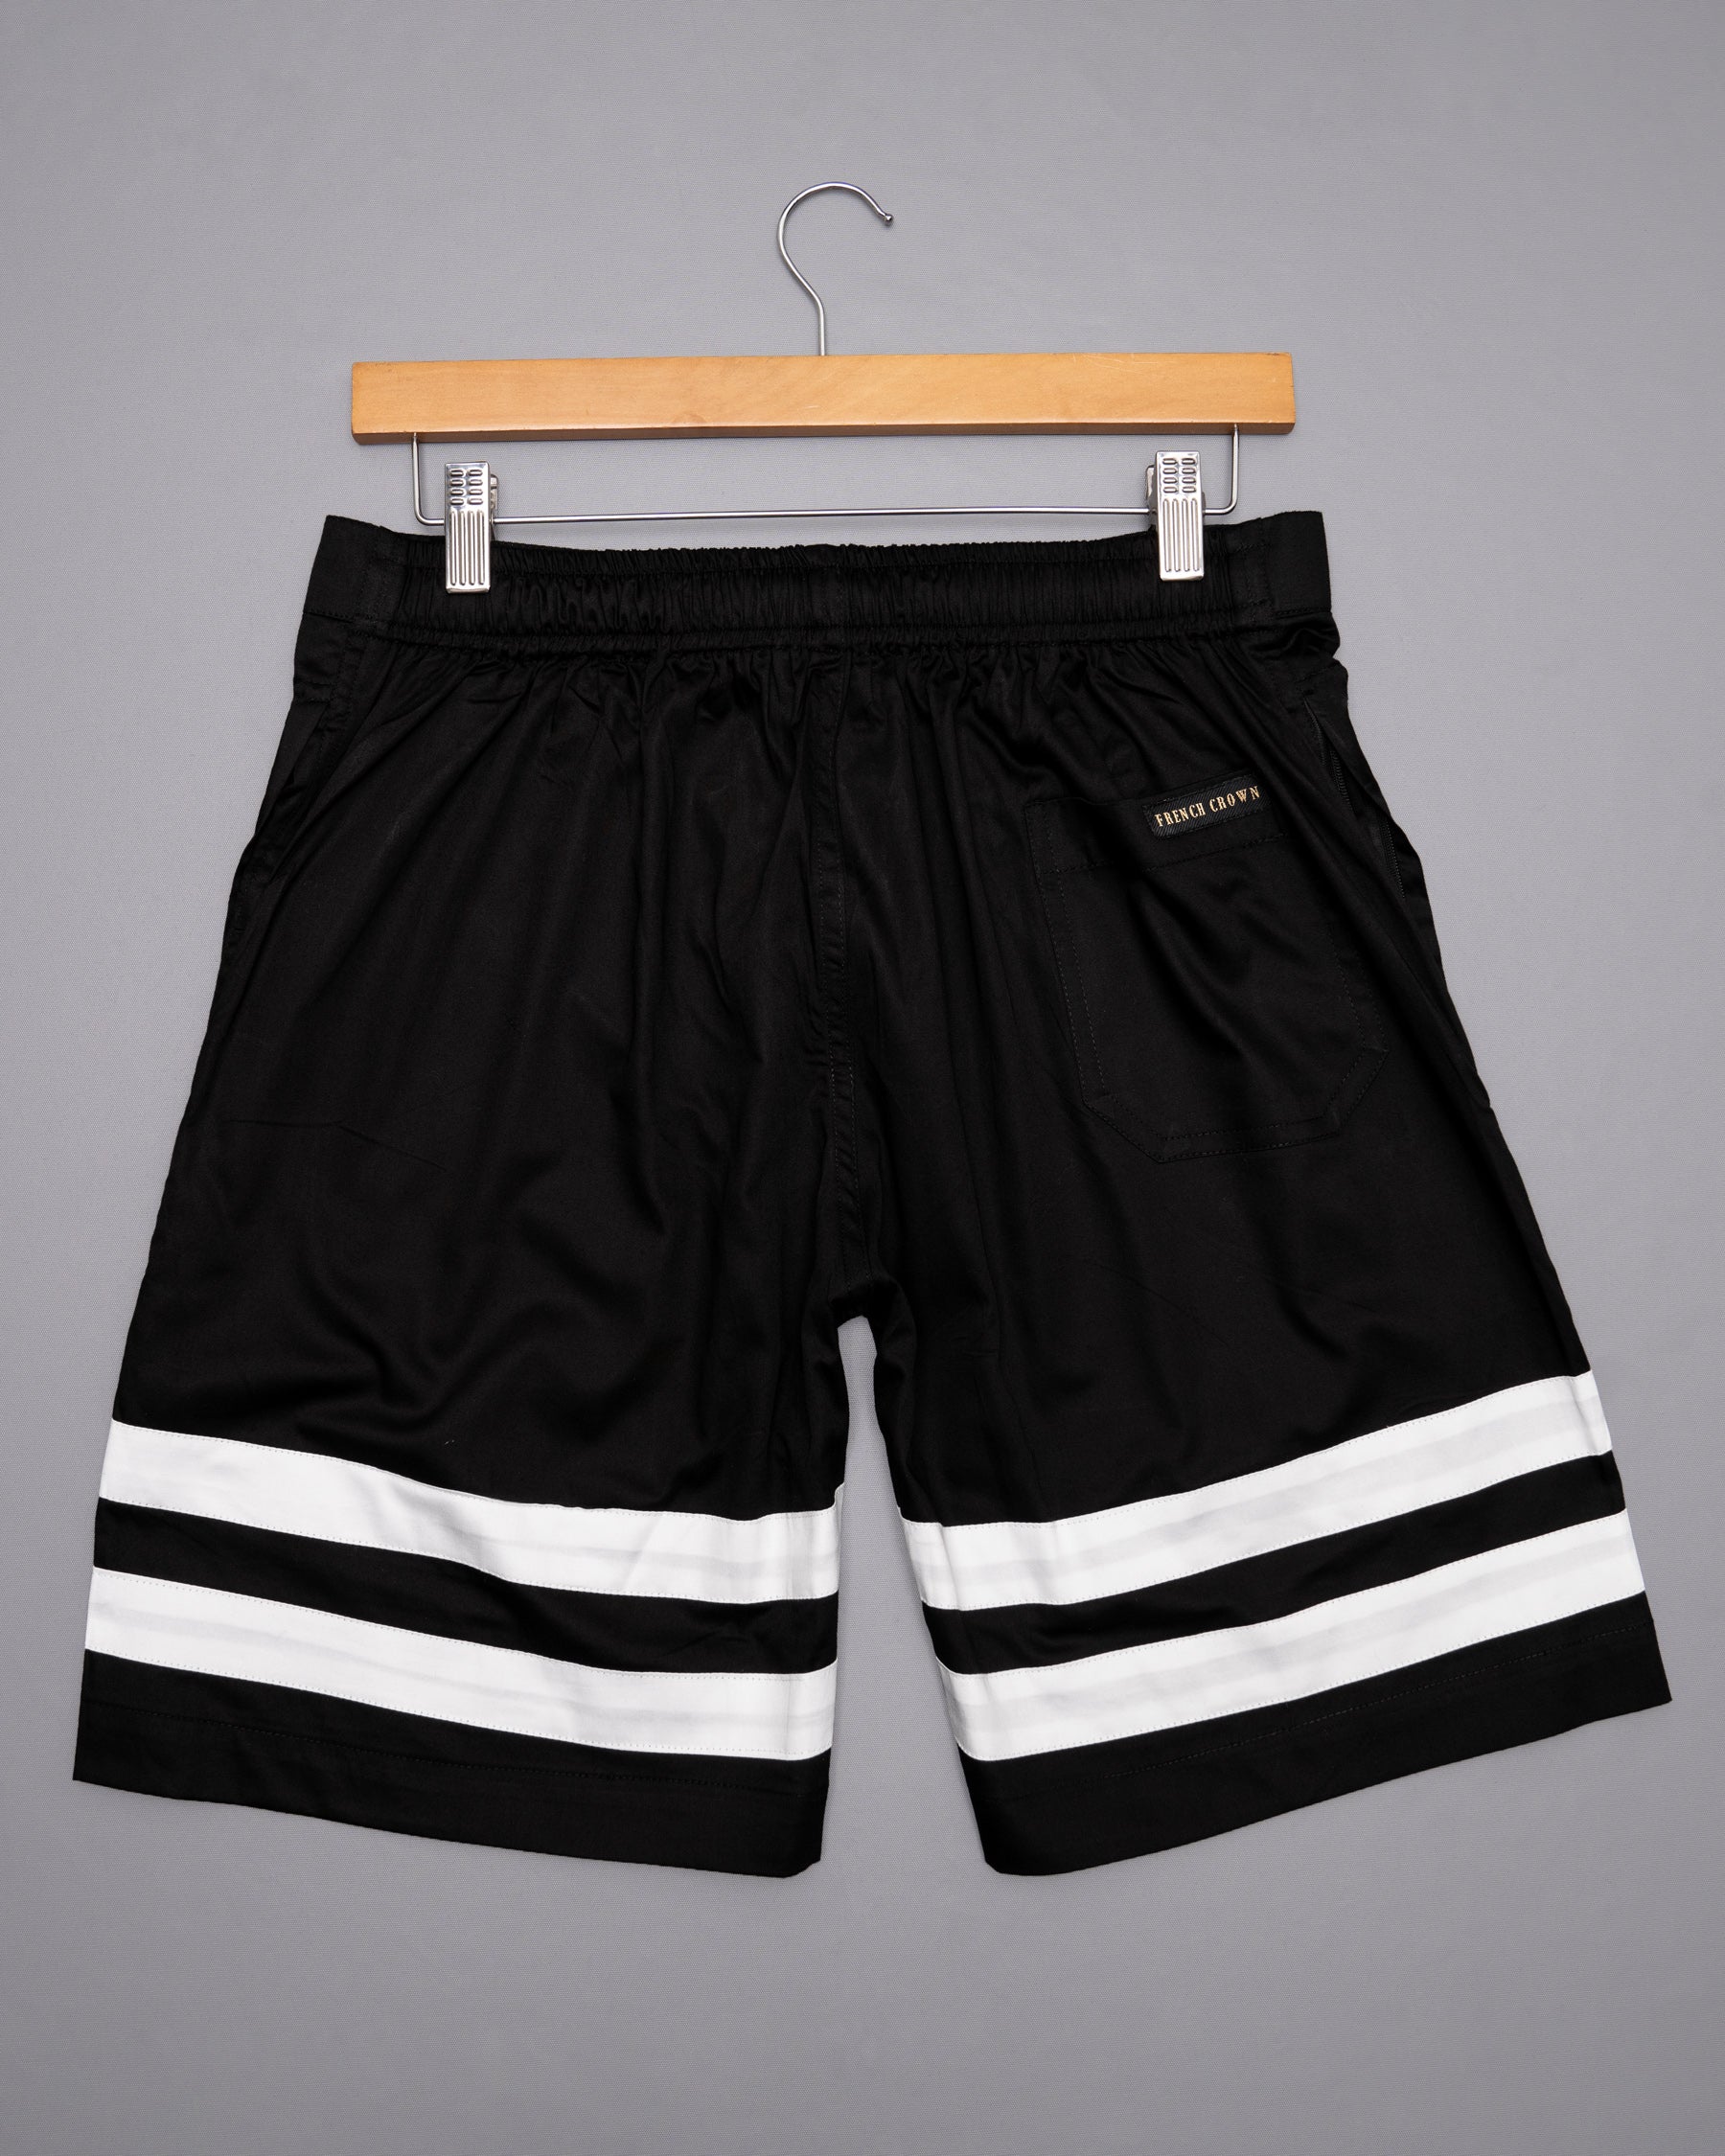 Jade Black with White Striped Designer Premium Cotton Shorts SR111-28, SR111-30, SR111-32, SR111-34, SR111-36, SR111-38, SR111-40, SR111-42, SR111-44